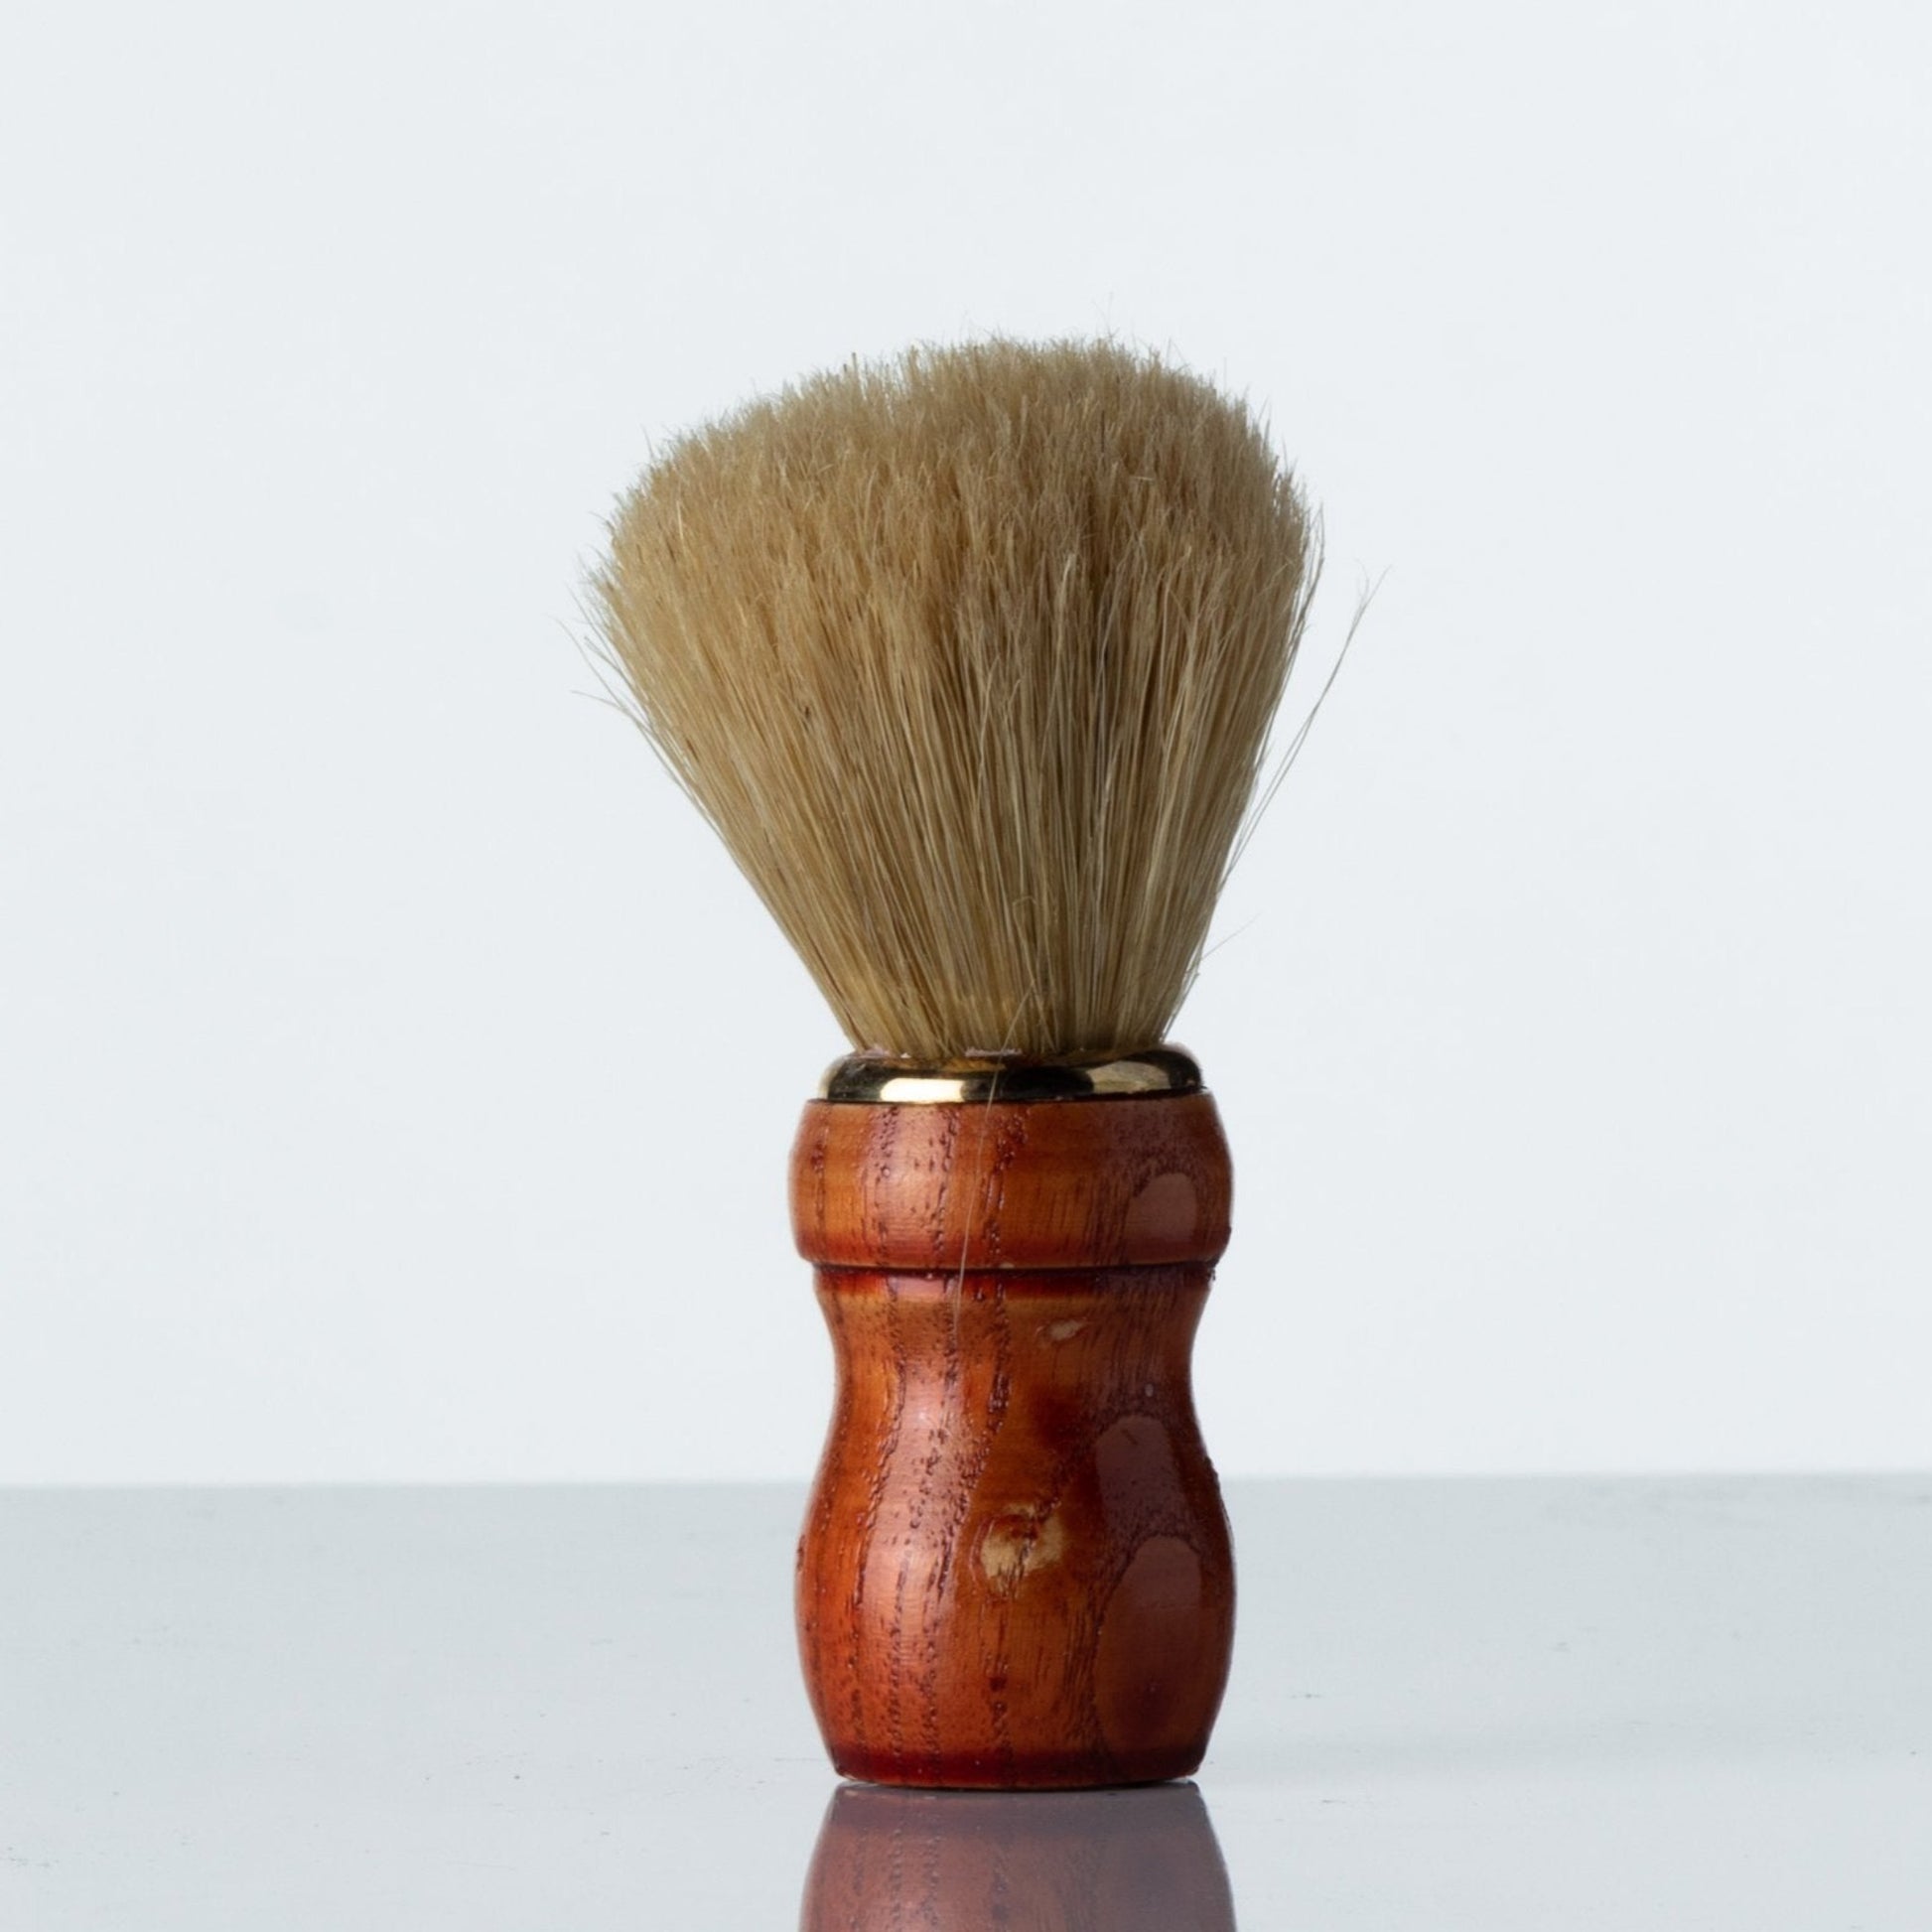 Shaving Brush - wooden